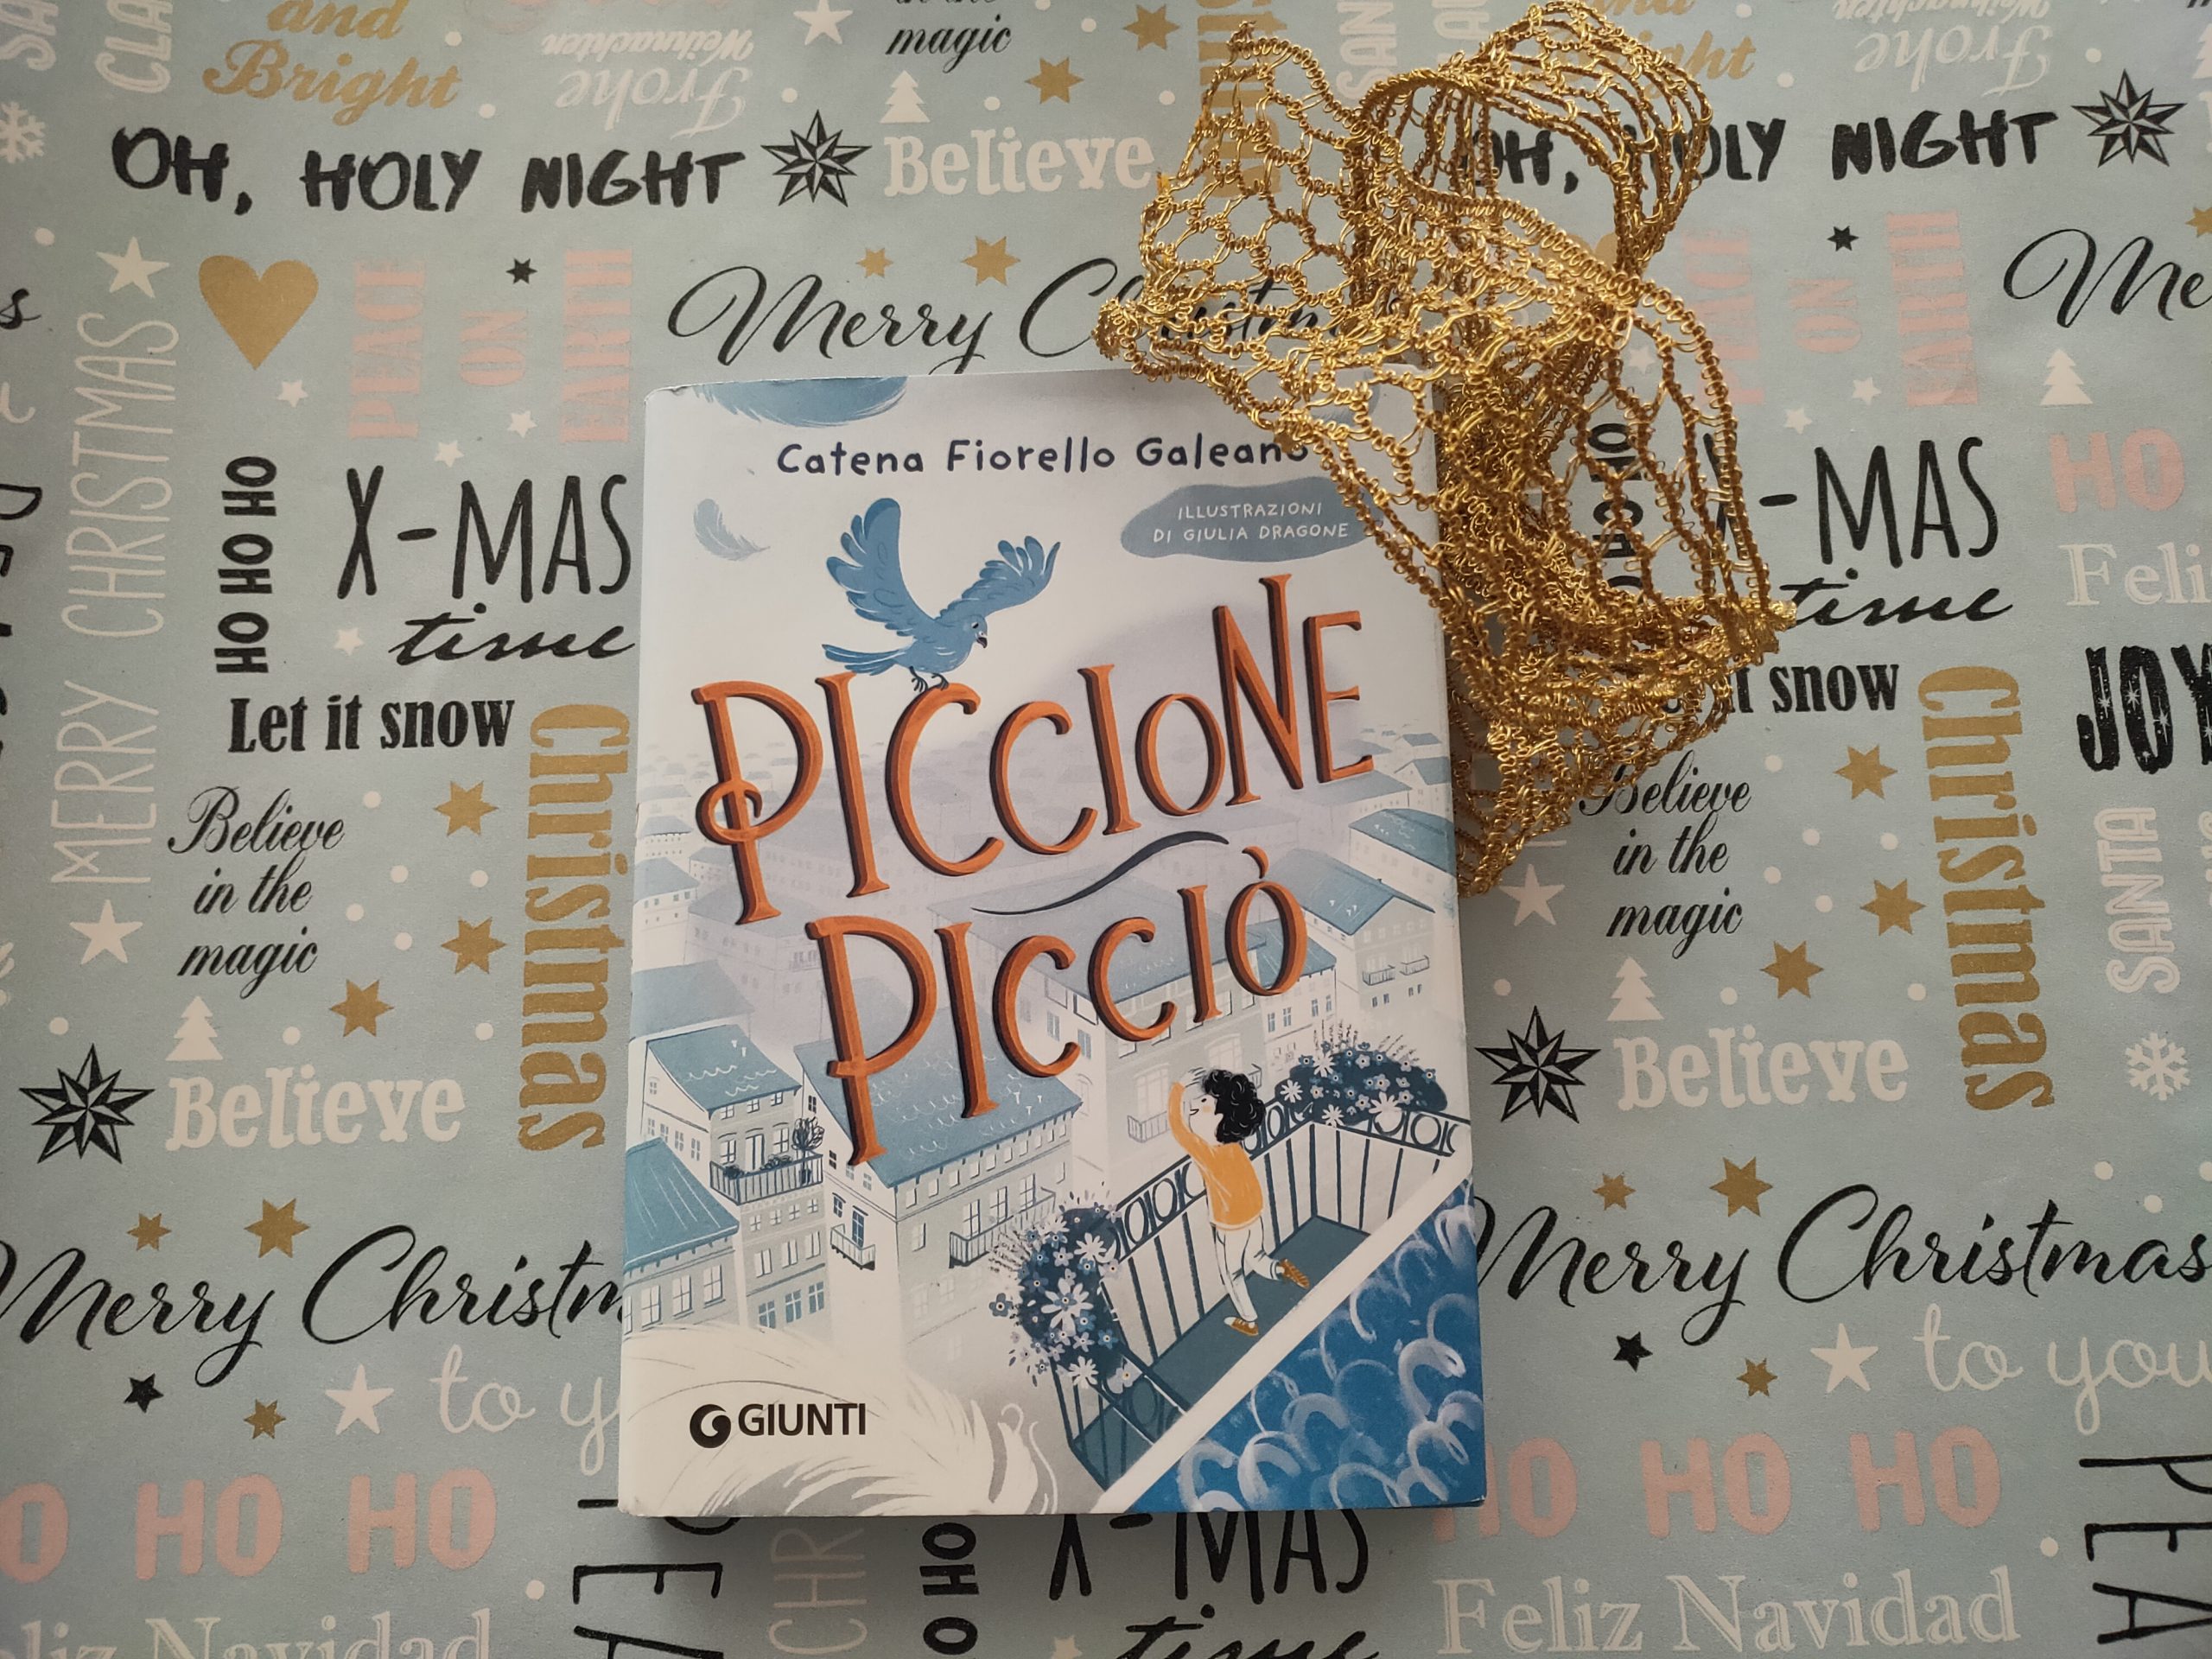 Libri da regalare/3: piccione piccio’ di Catena fiorello